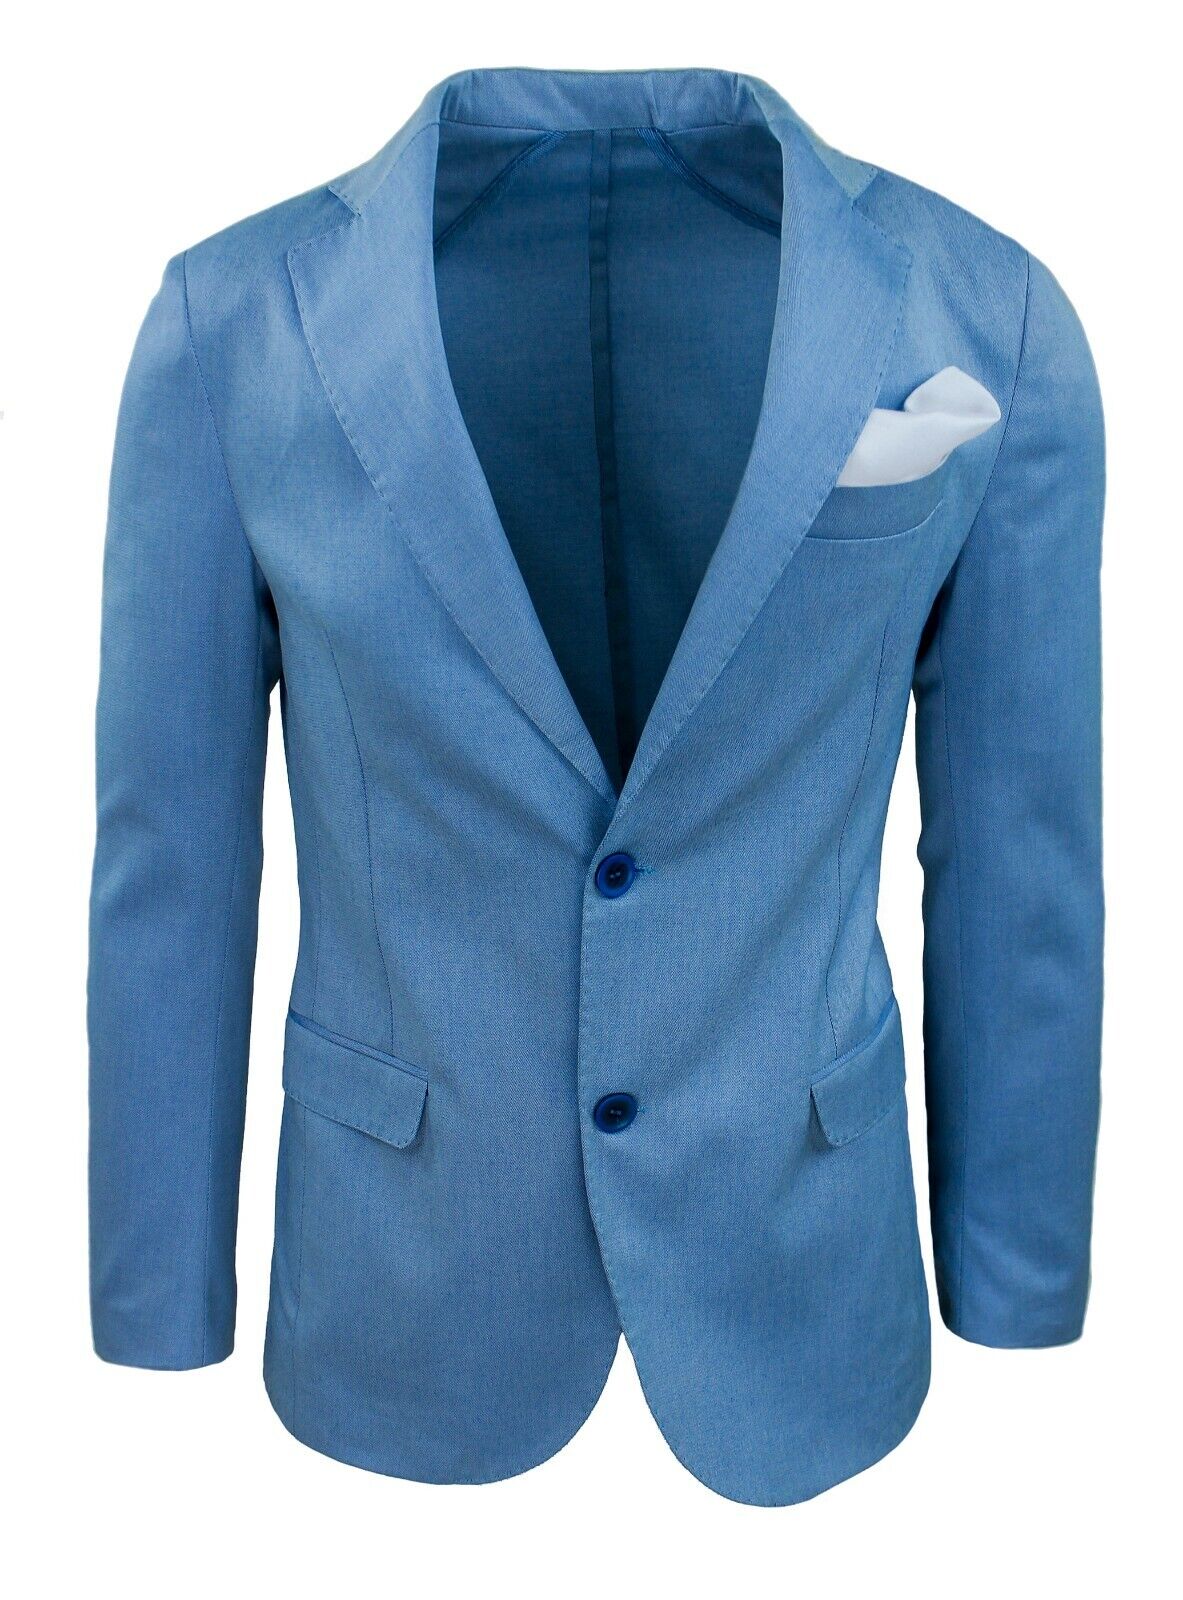 Giacca Blazer uomo Sartoriale blu chiaro slim fit elegante cerimonia made Italy